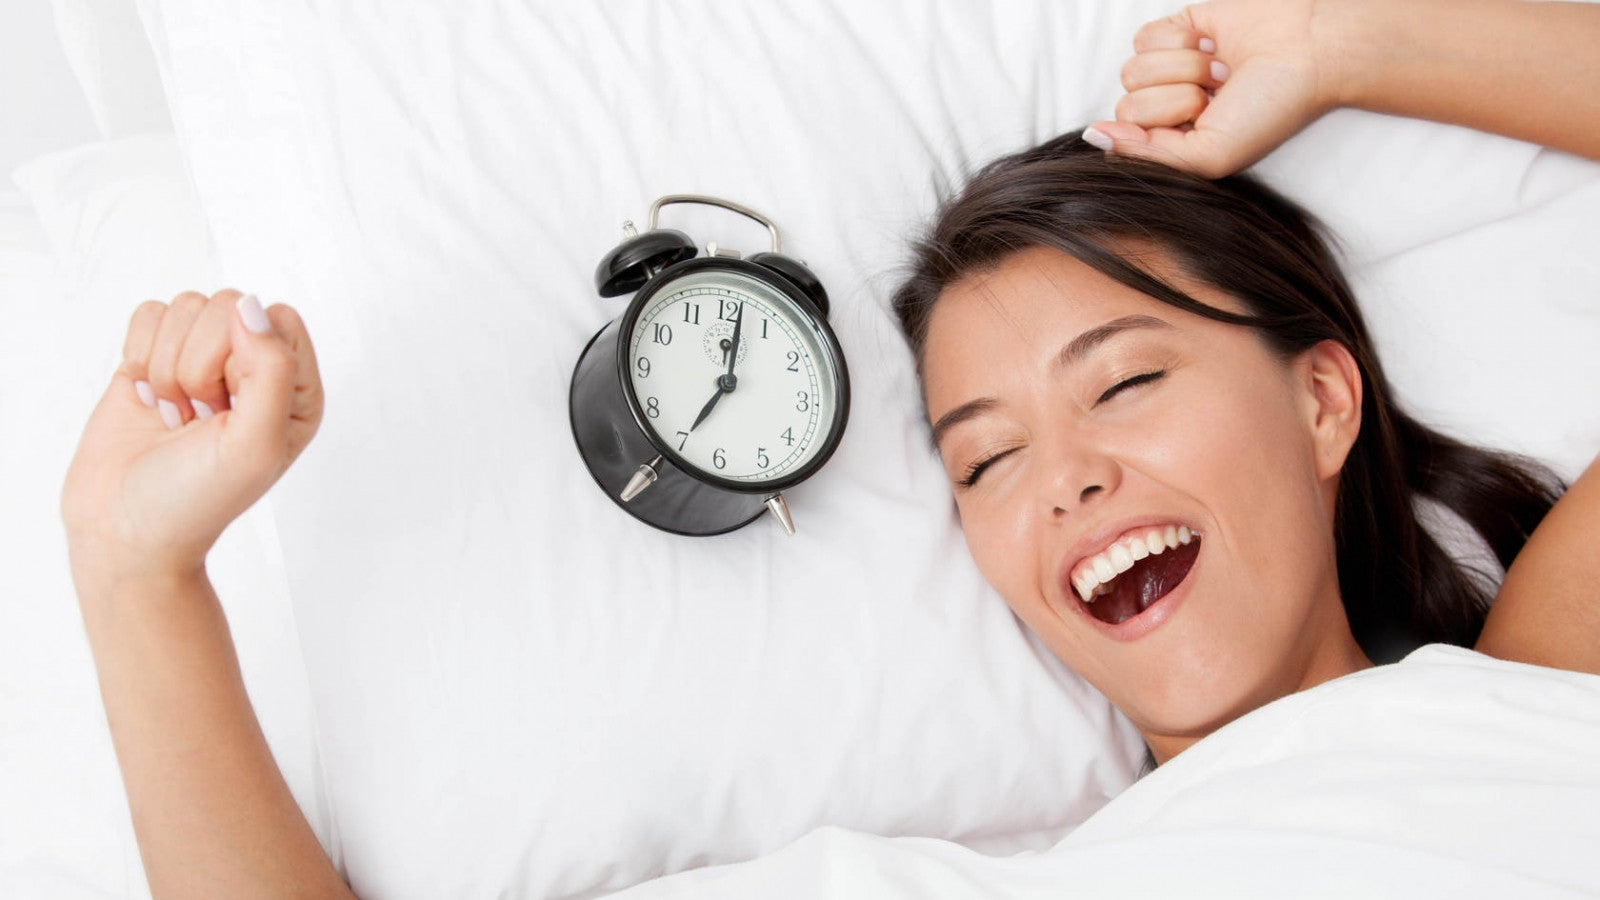 HI-TIPS: Beauty Sleep Tips